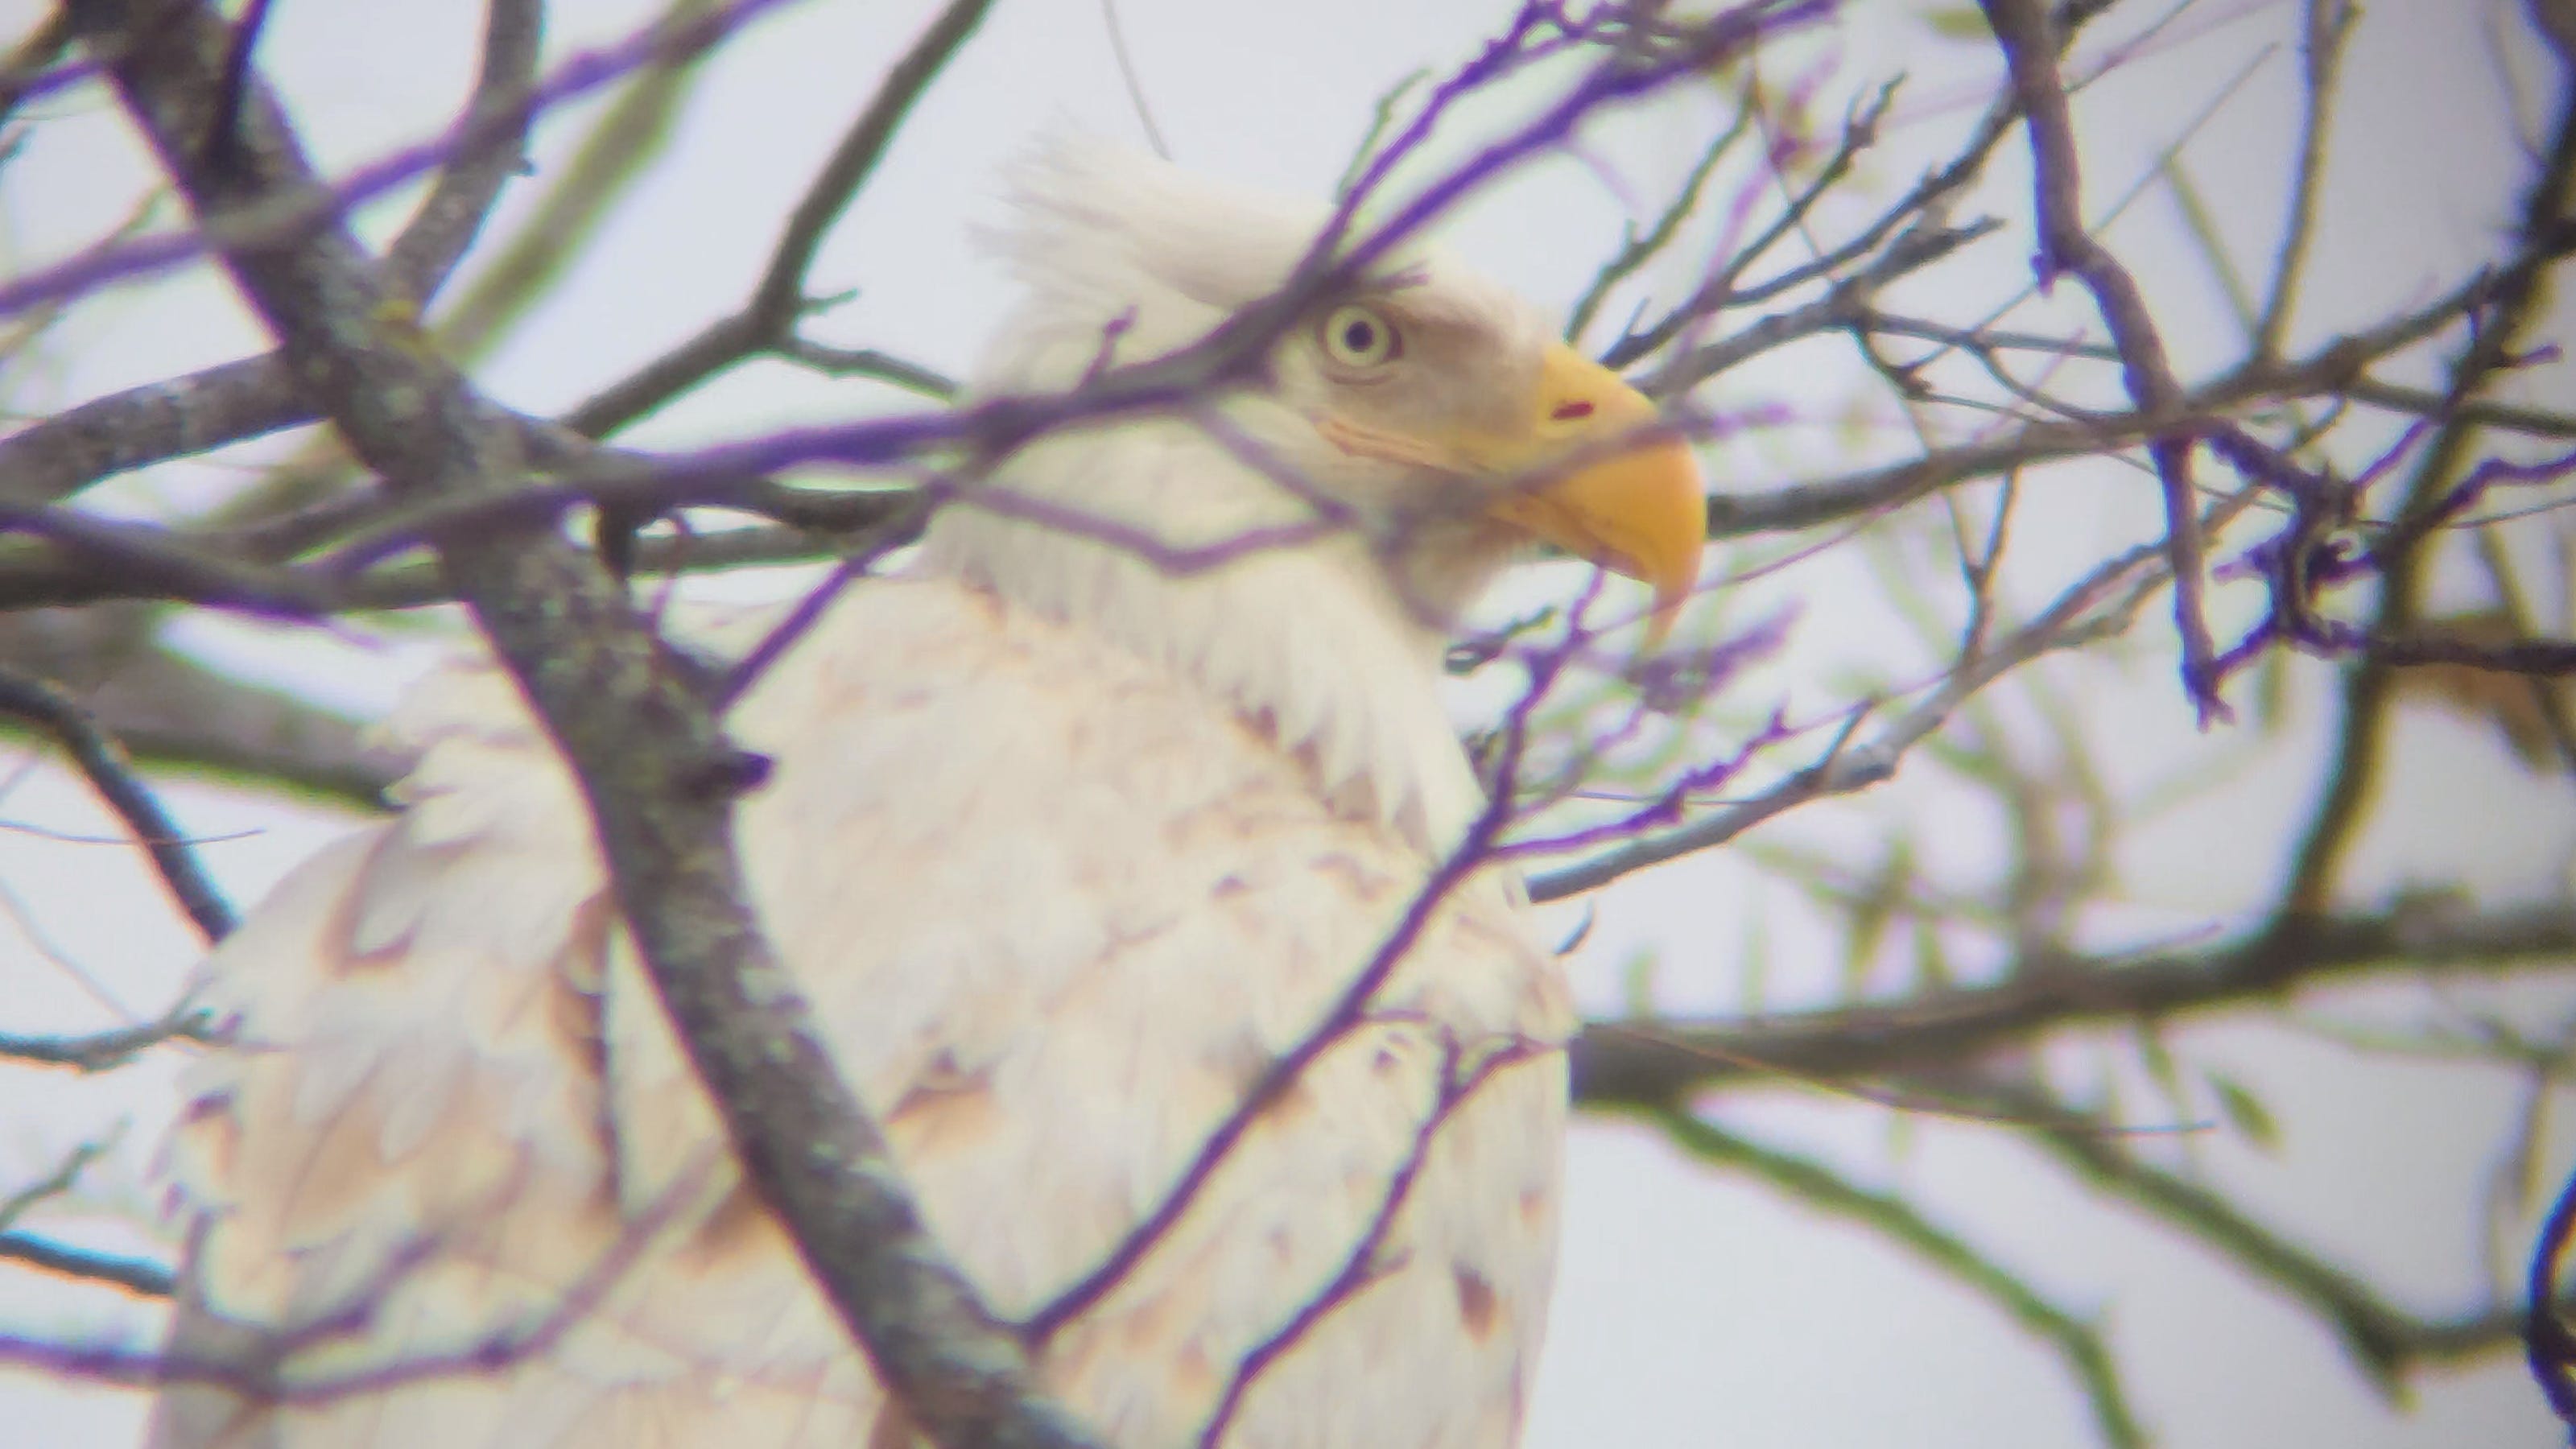 White bald eagle found in Oklahoma: Rare leucistic bird seen, pictured